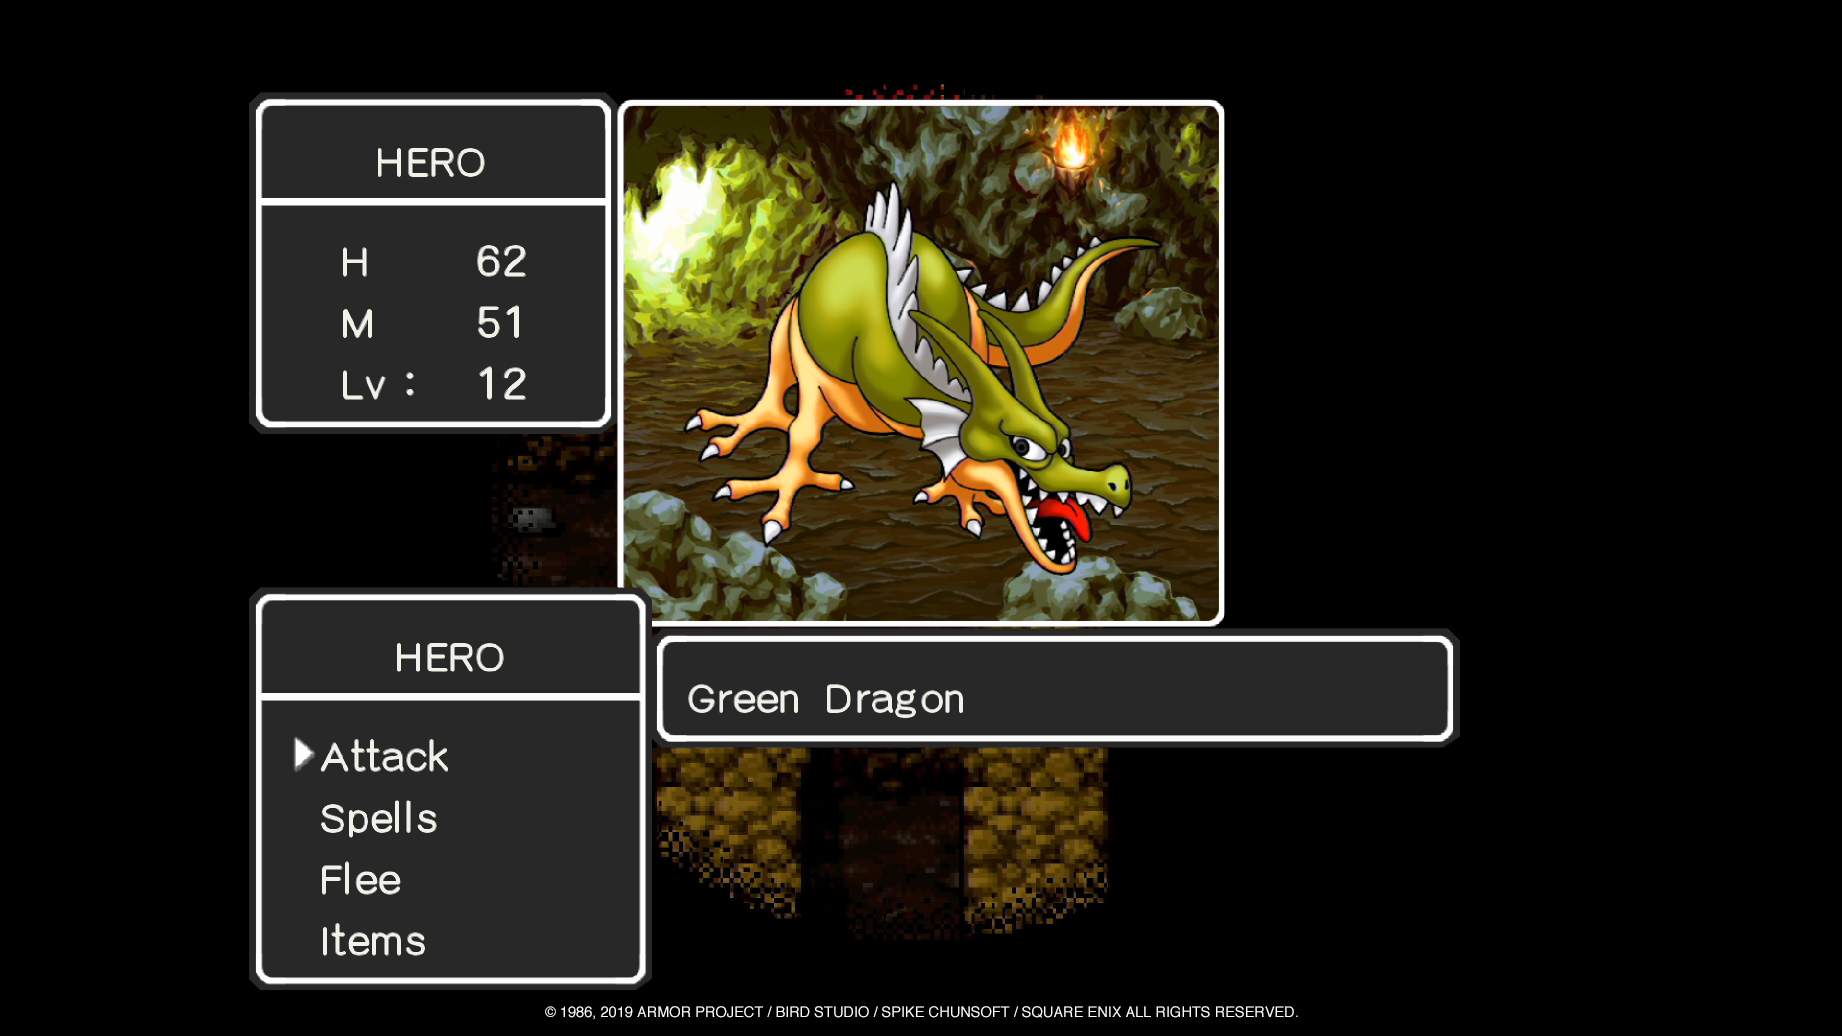 Hero choosing attack in battle menu against Green Dragon